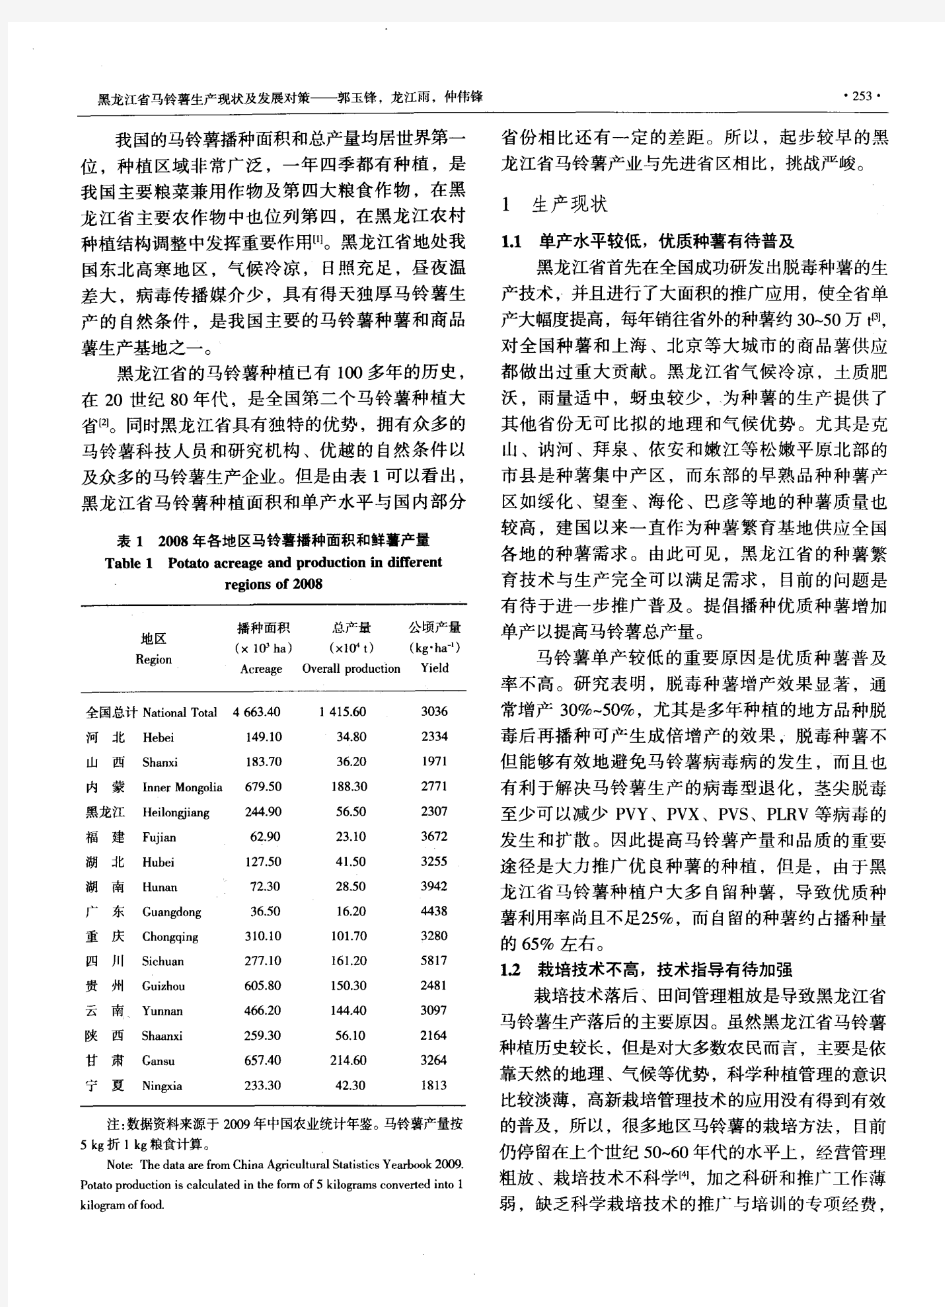 黑龙江省马铃薯生产现状及发展对策